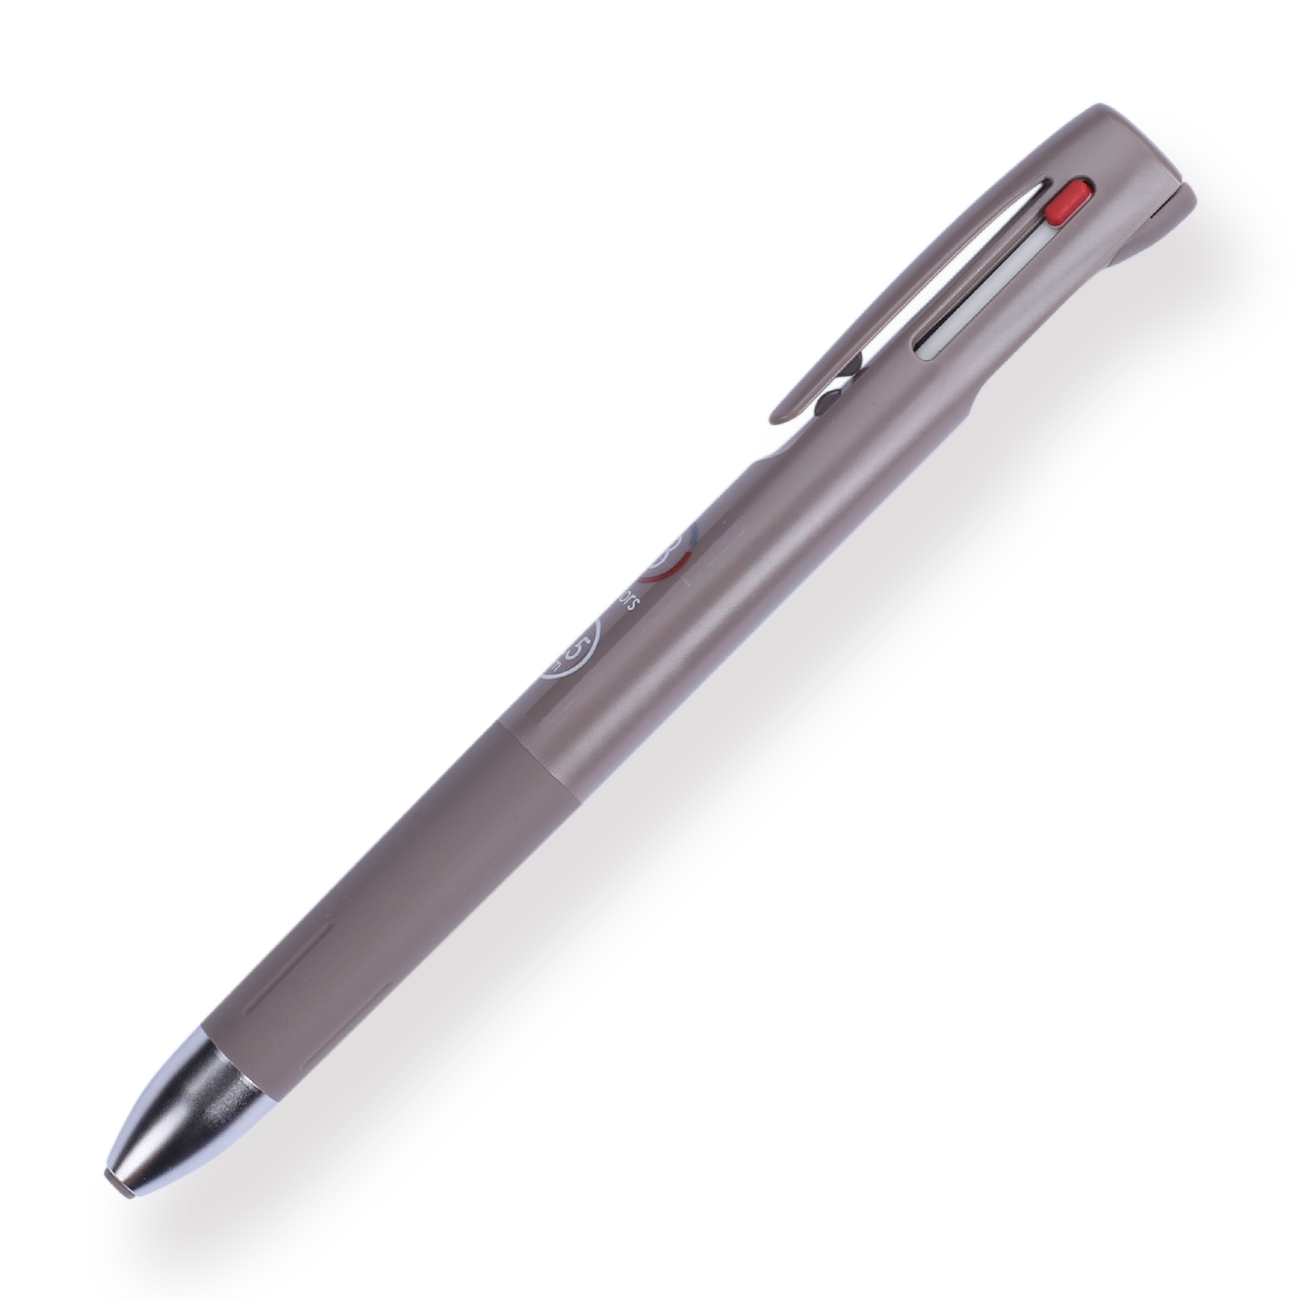 Zebra - Blen 3C - 3 Color Ballpoint Multi Pen 0.5mm Black